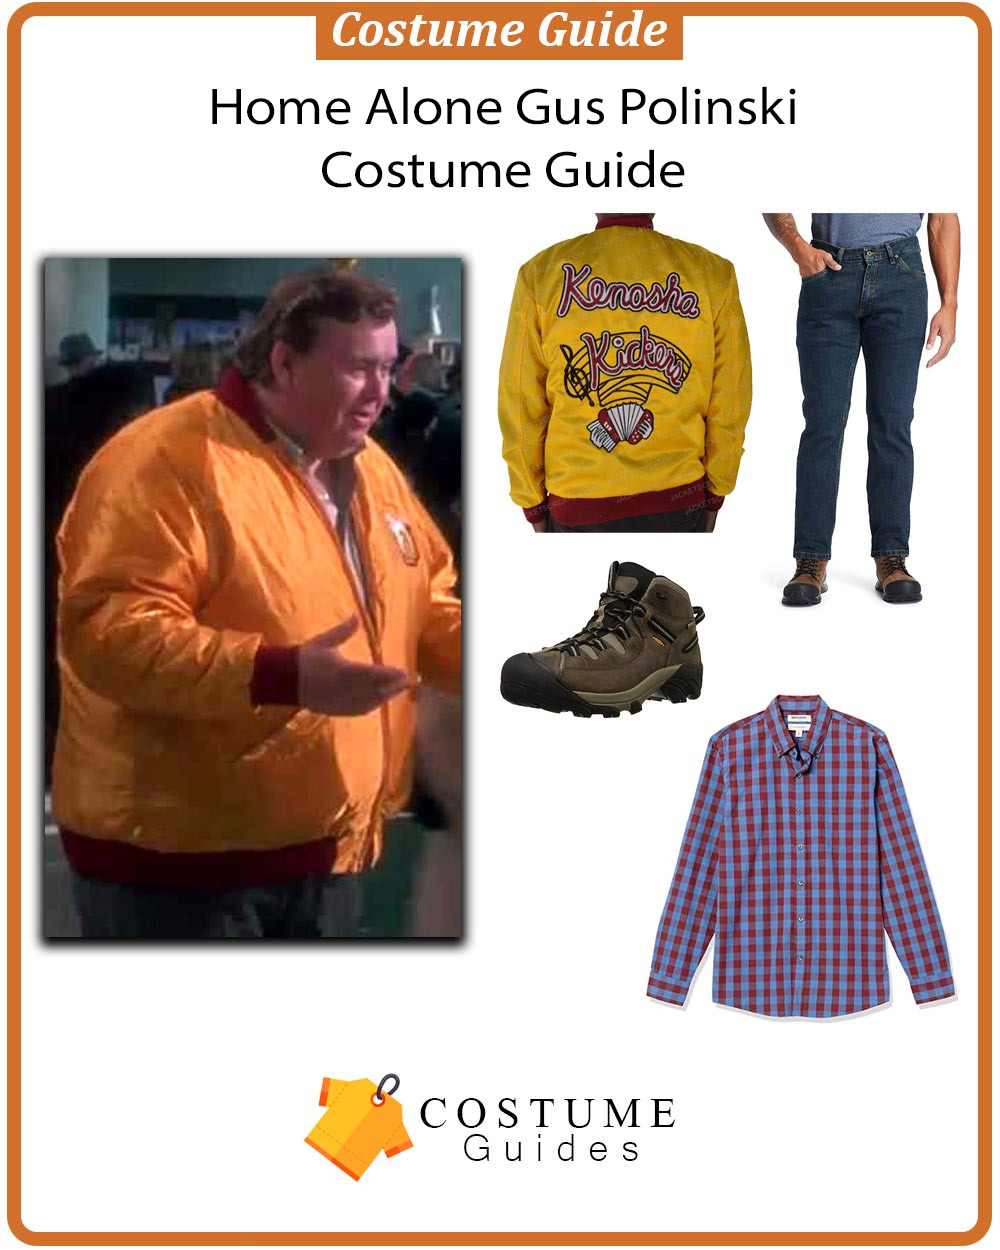 Home-Alone-Gus-Polinski-Costume-Guide